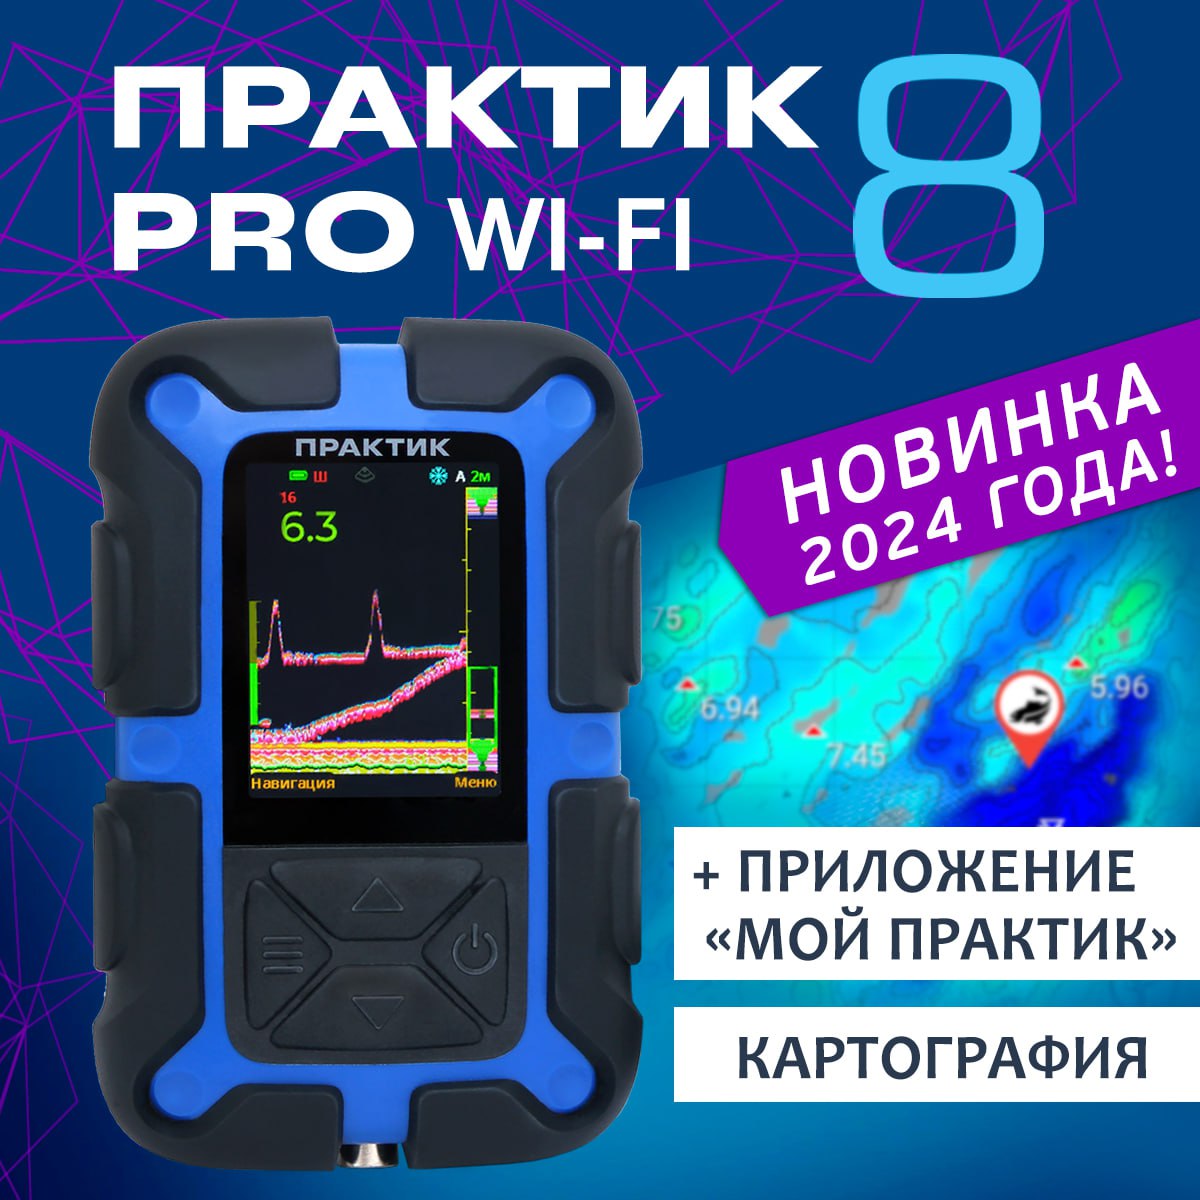 Эхолот Практик 8 PRO Wi-Fi - купить в Москве, цены на Мегамаркет | 600018225157